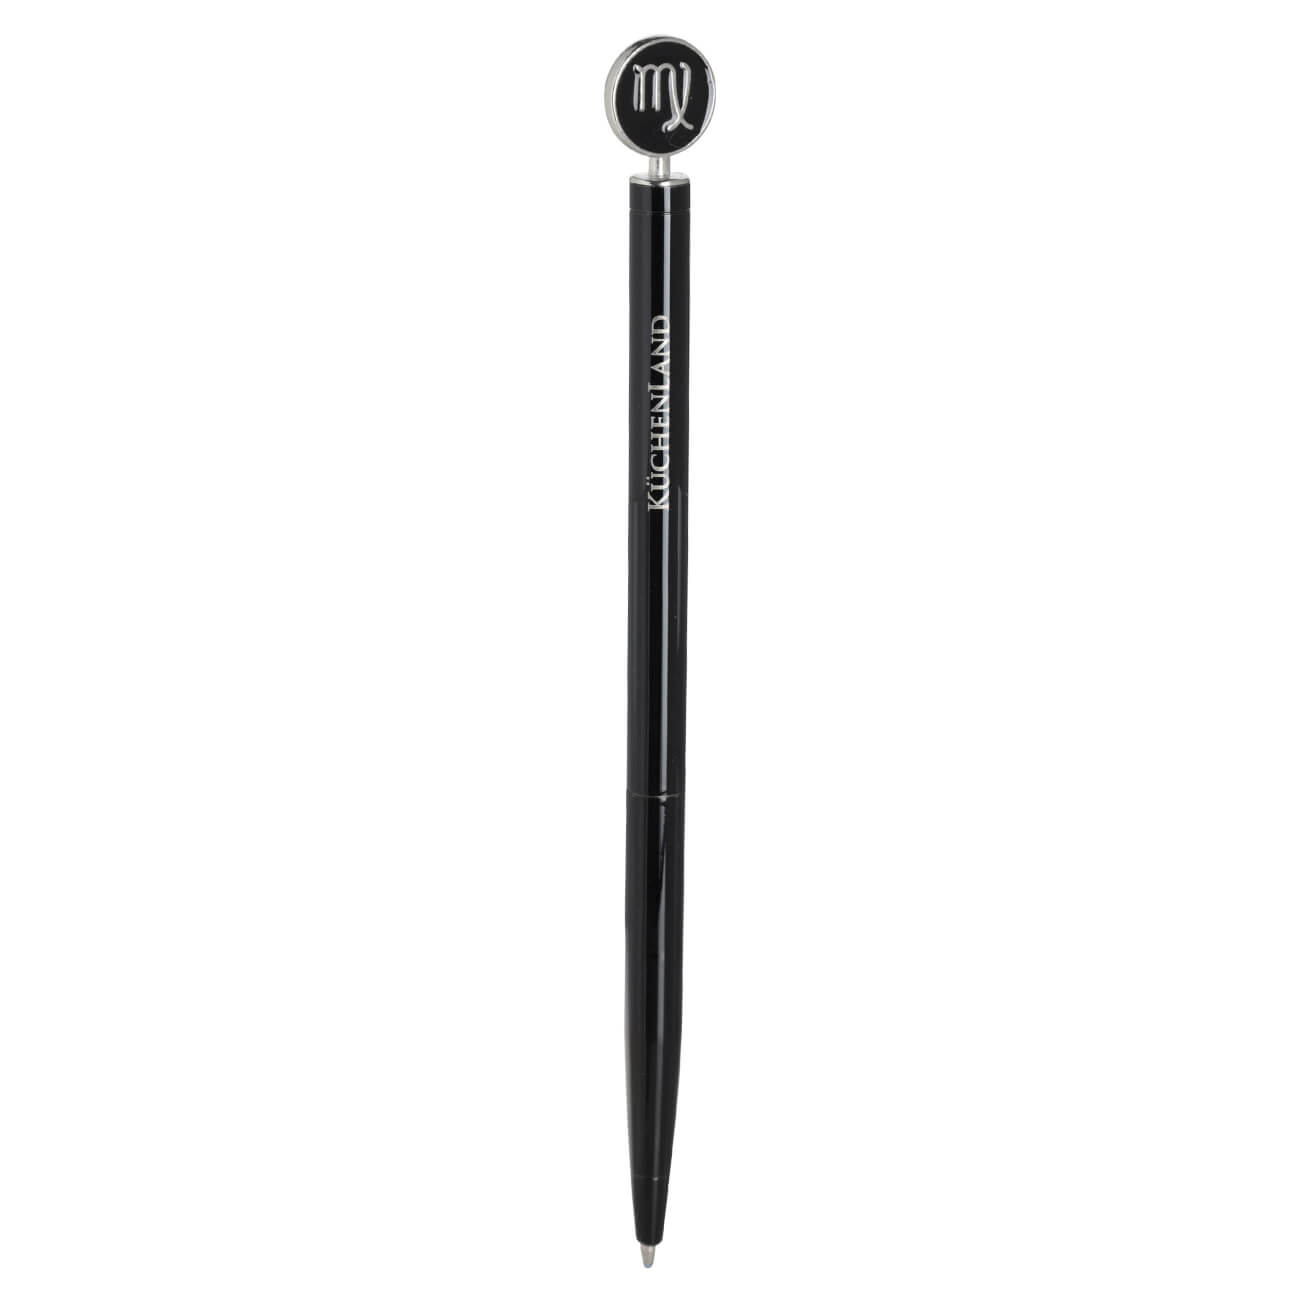 Ручка шариковая, 15 см, с фигуркой, сталь, черно-серебристая, Дева, Zodiac ручка закладка